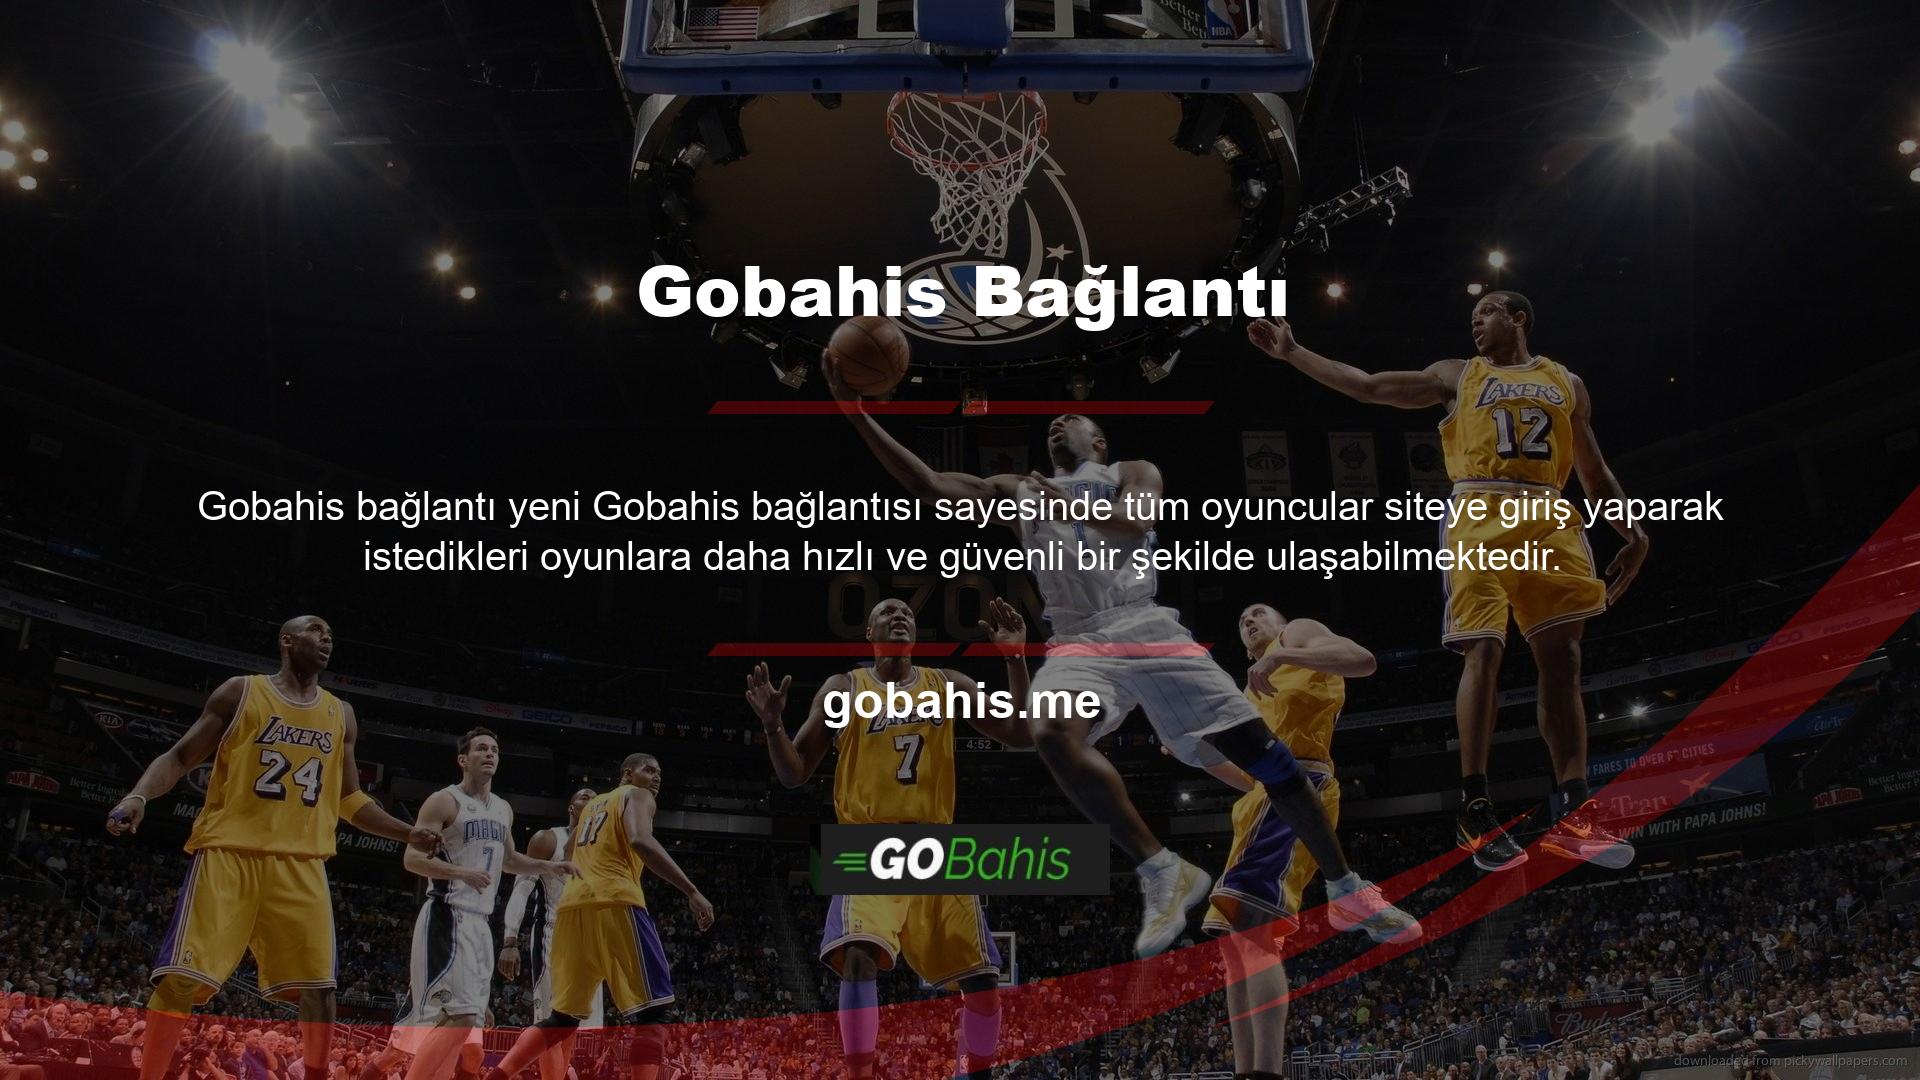 Gobahis baskı sistemi, Gobahis web sitesinin üyelerine (kullanıcılarına) çok sayıda para çekme seçeneği sunar